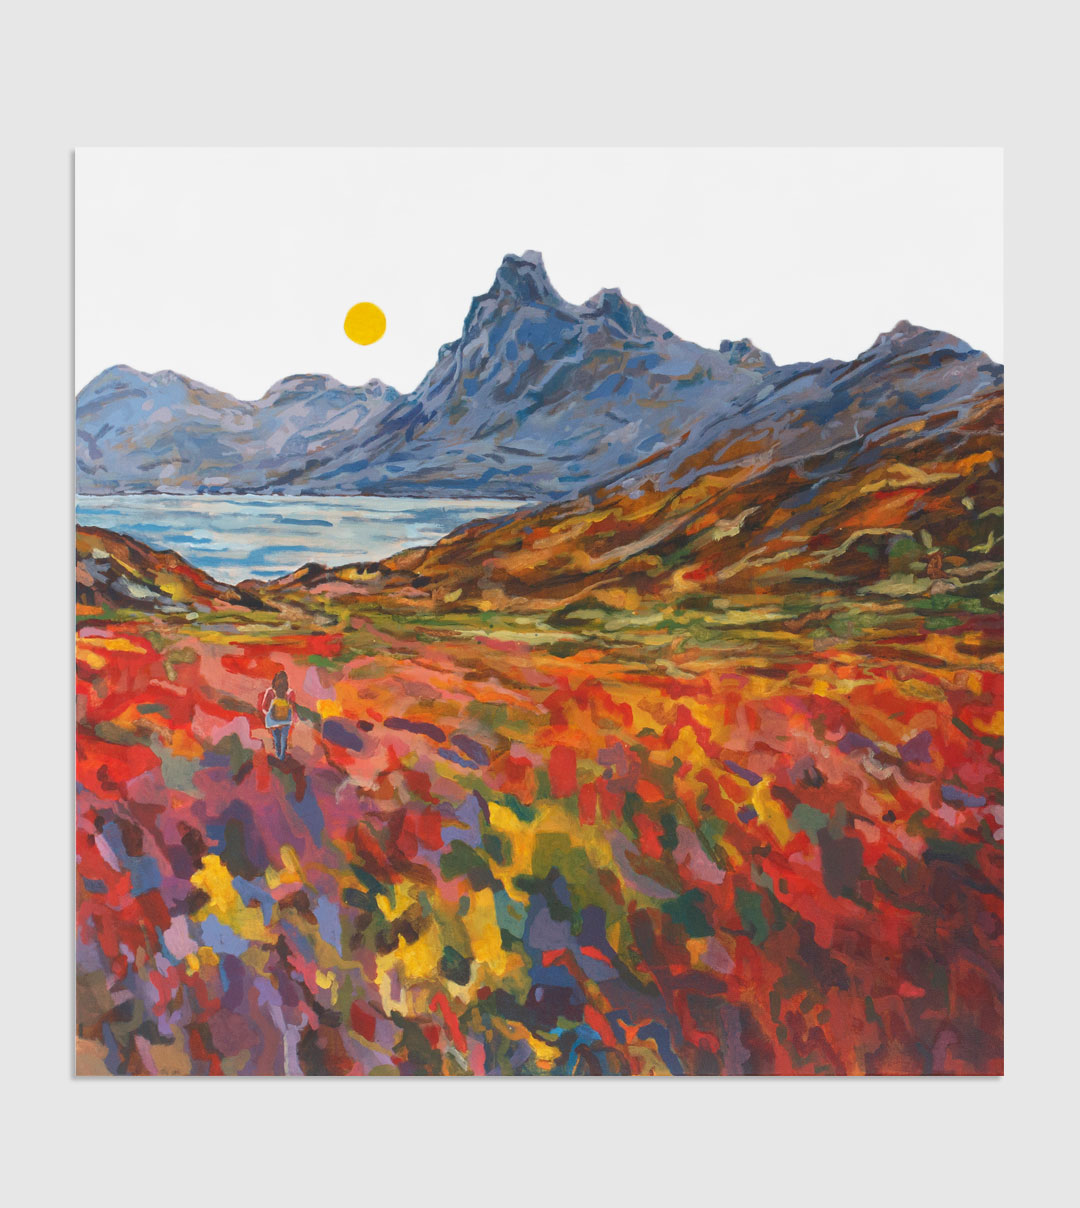 Abstrakte Landschaft als XXL Gemälde vom Bergmassiv Eystrahorn / Hvalnesfjall an der Ringstraße im Südosten Islands